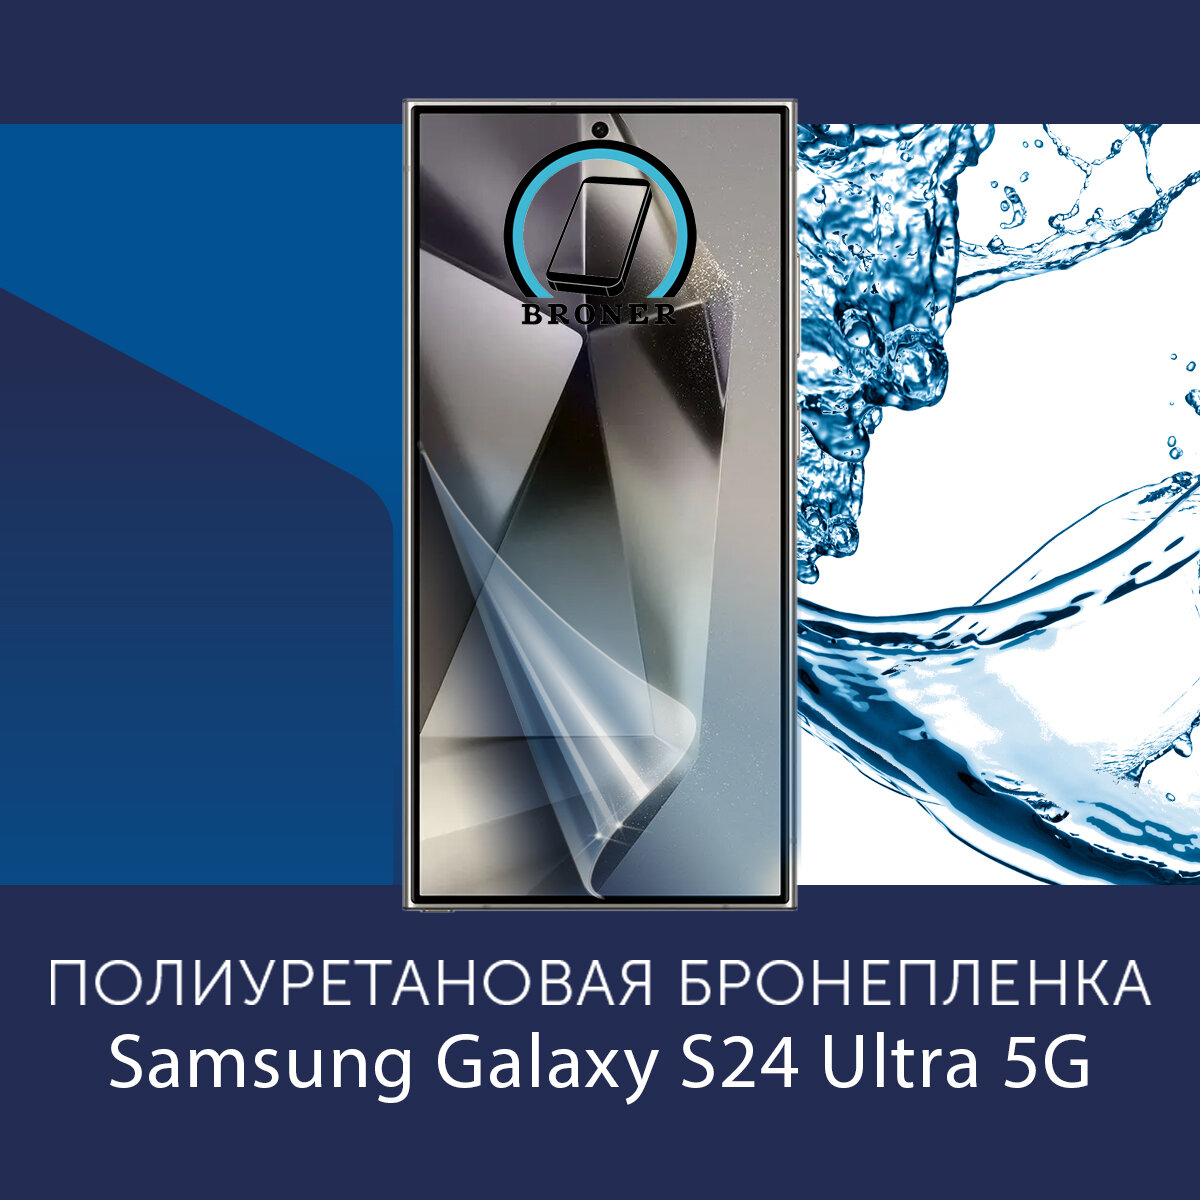 Полиуретановая бронепленка для Samsung Galaxy S24 Ultra 5G / Защитная плёнка на экран, совместима с чехлом, с вырезом под камеру / Глянцевая